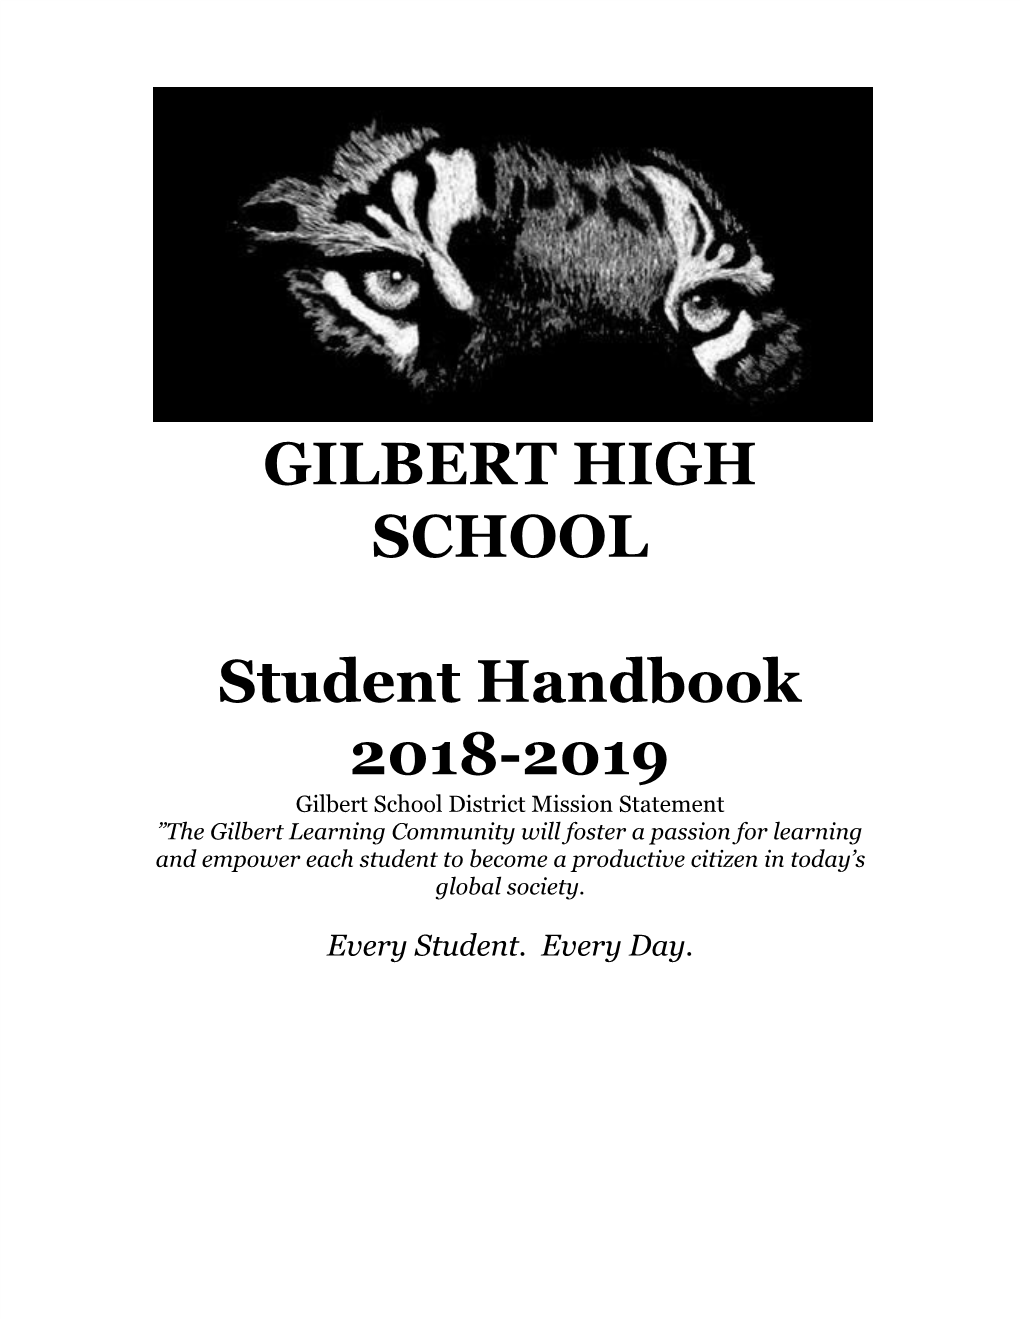 GILBERT HIGH SCHOOL Student Handbook 2018-2019